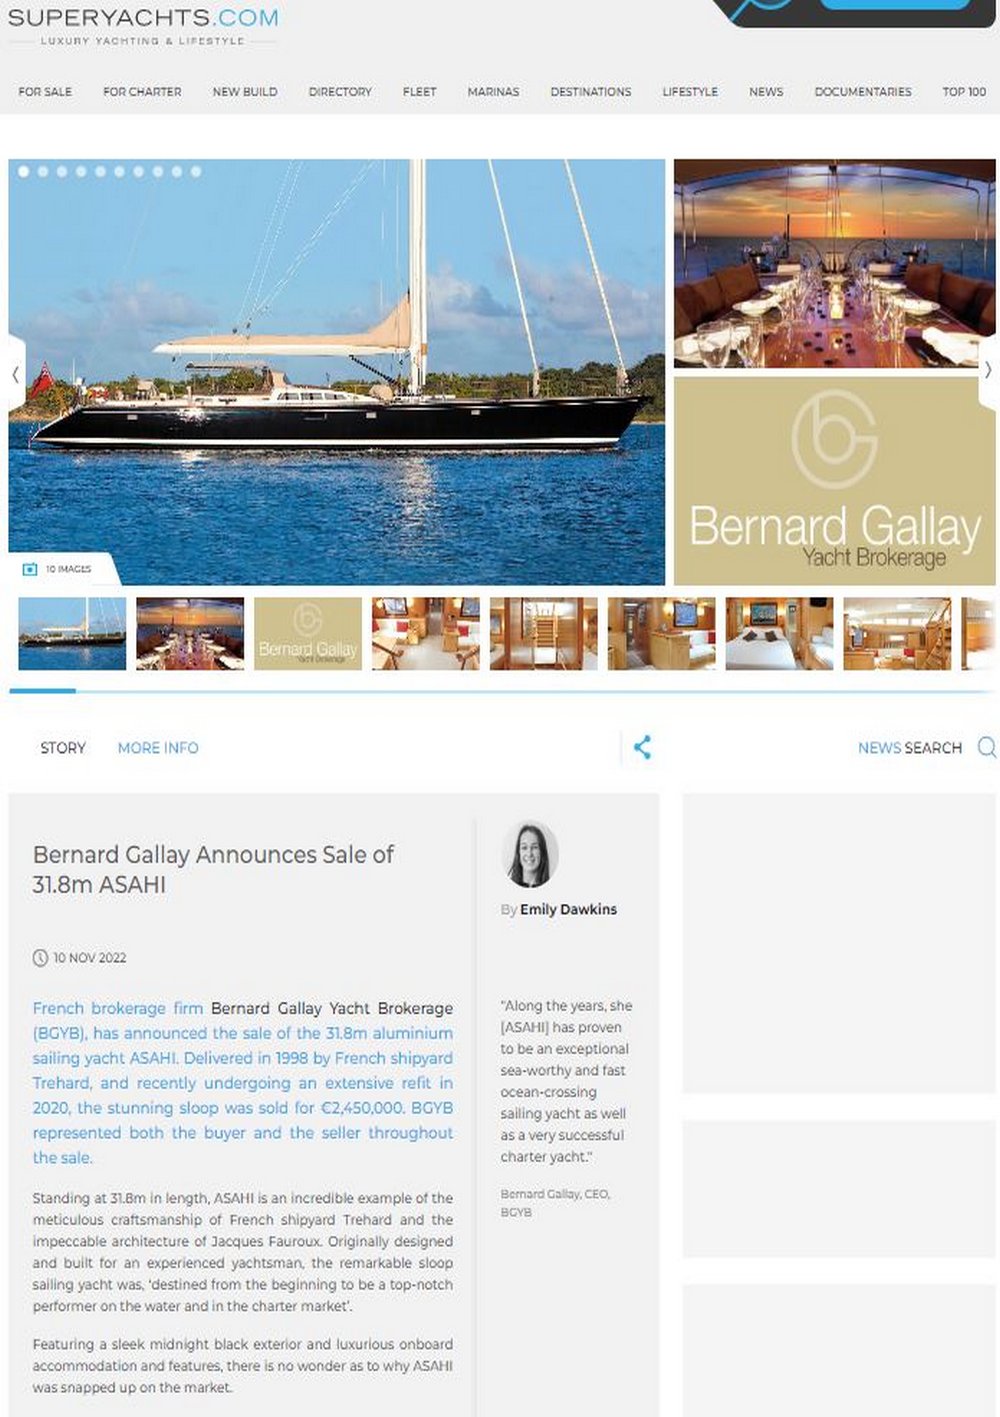 SUPERYACHTS.COM BGYB annonce la vente du voilier de 31.8m ASAHI